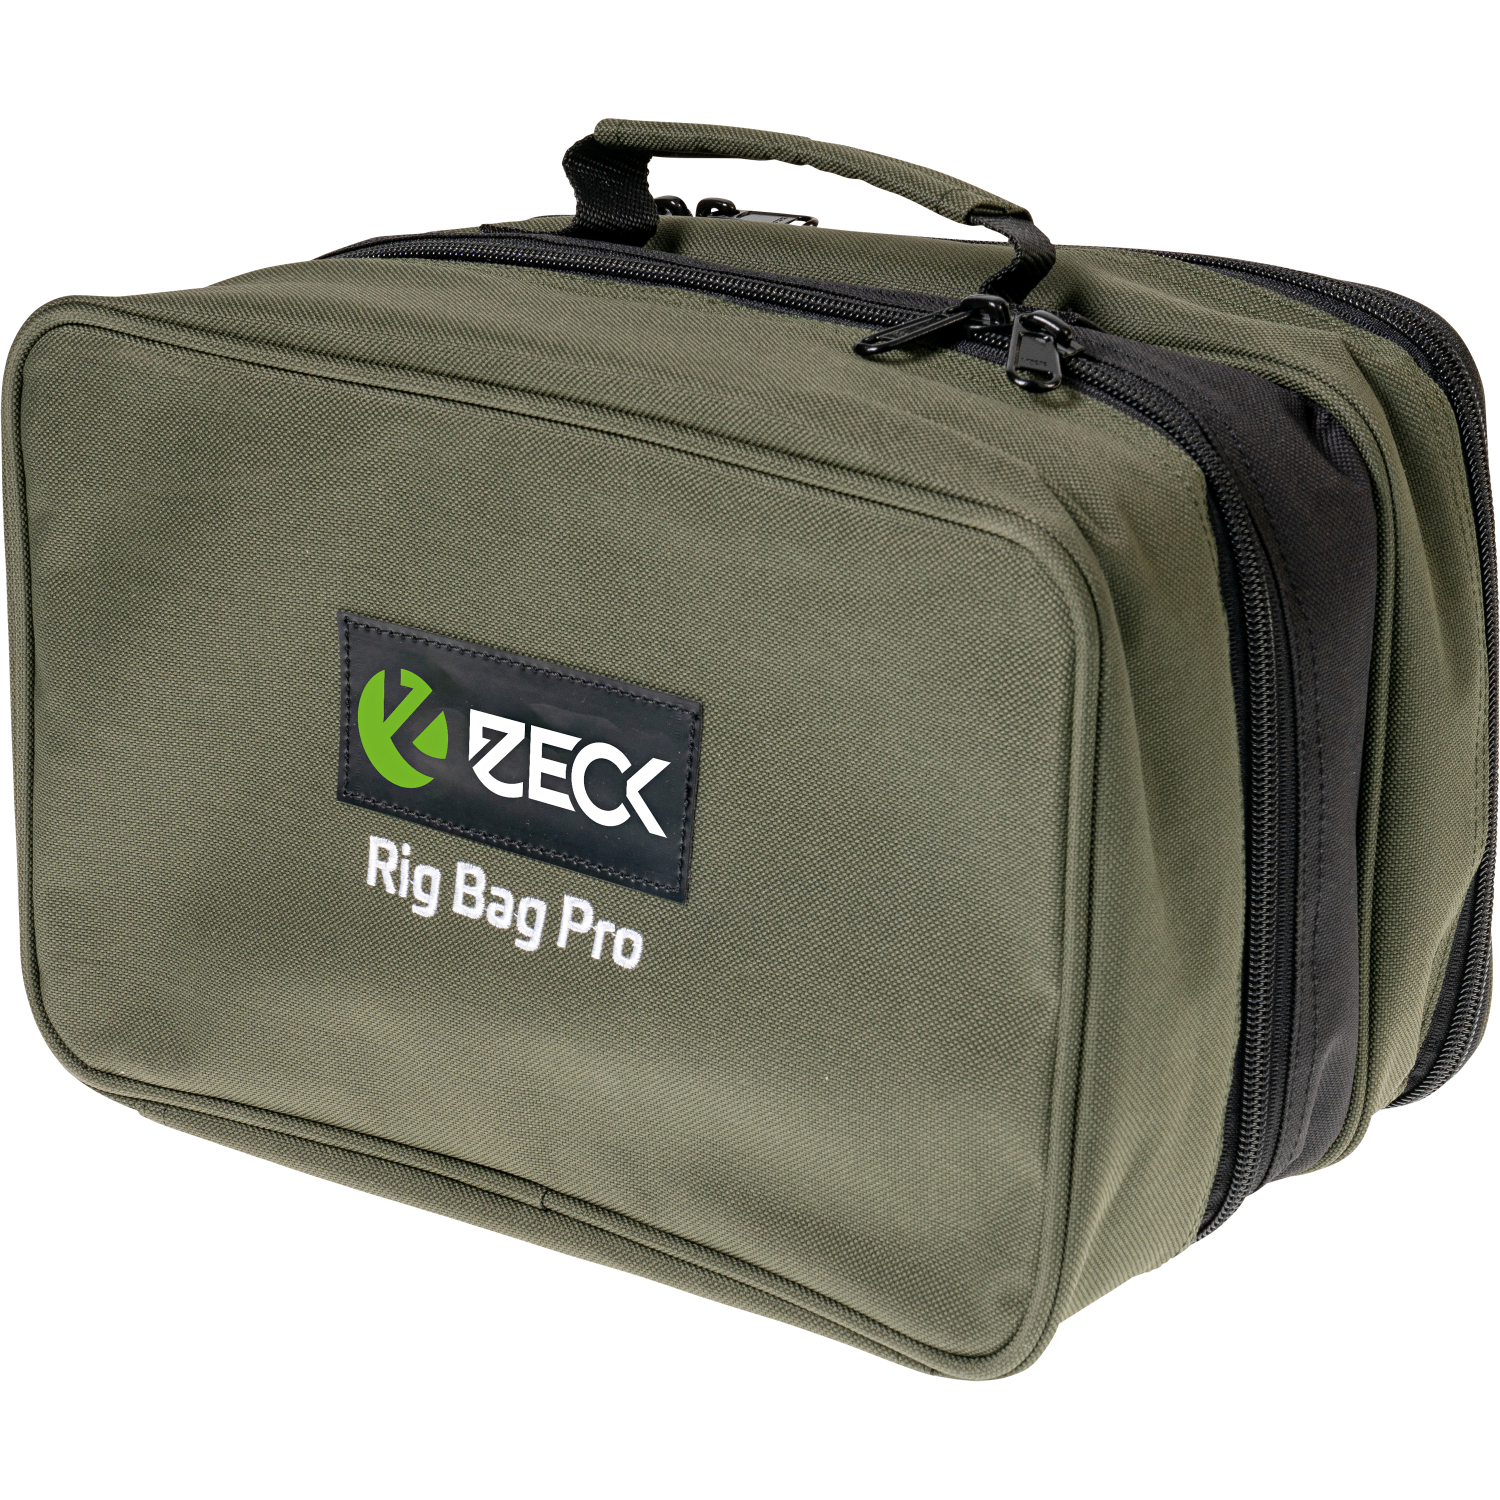 Zeck Rig Bag Pro+ Tackle Box WP M günstig kaufen - Askari Angelshop